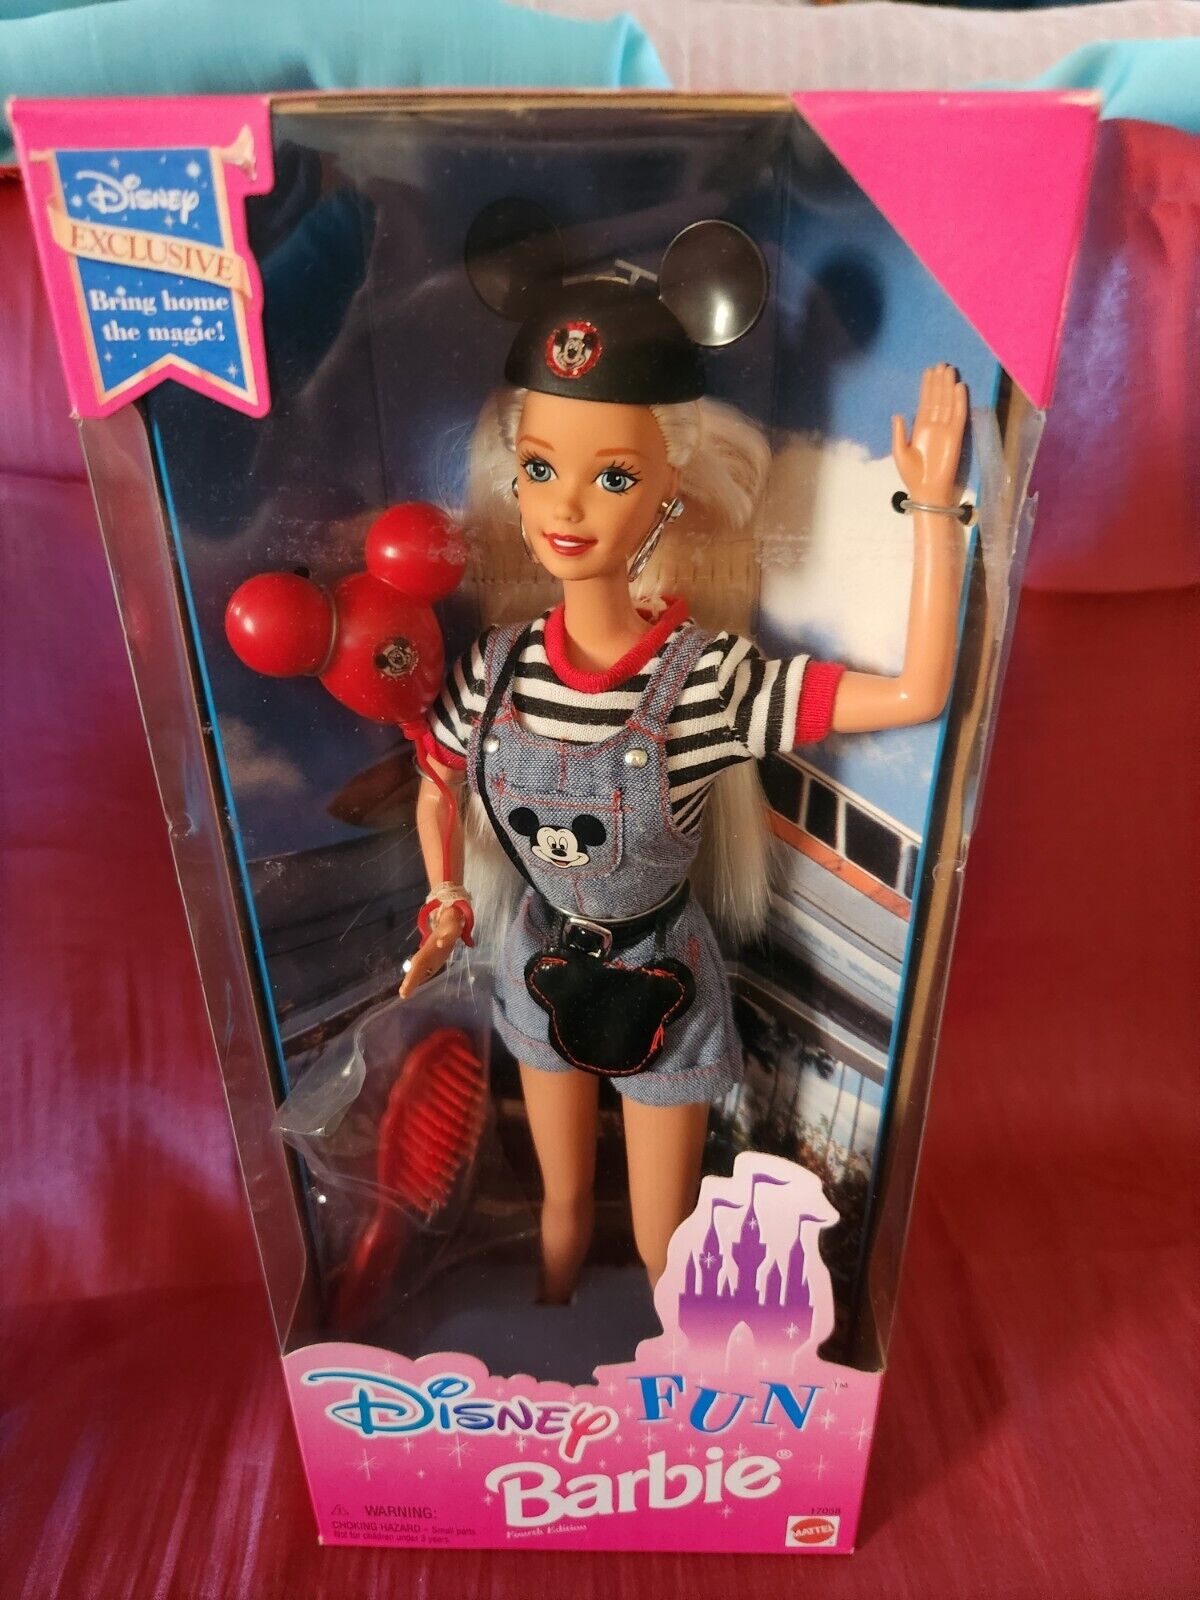 🎢Disney Fun Barbie Doll 1996 4th Edition NEW IN SEALED BOX